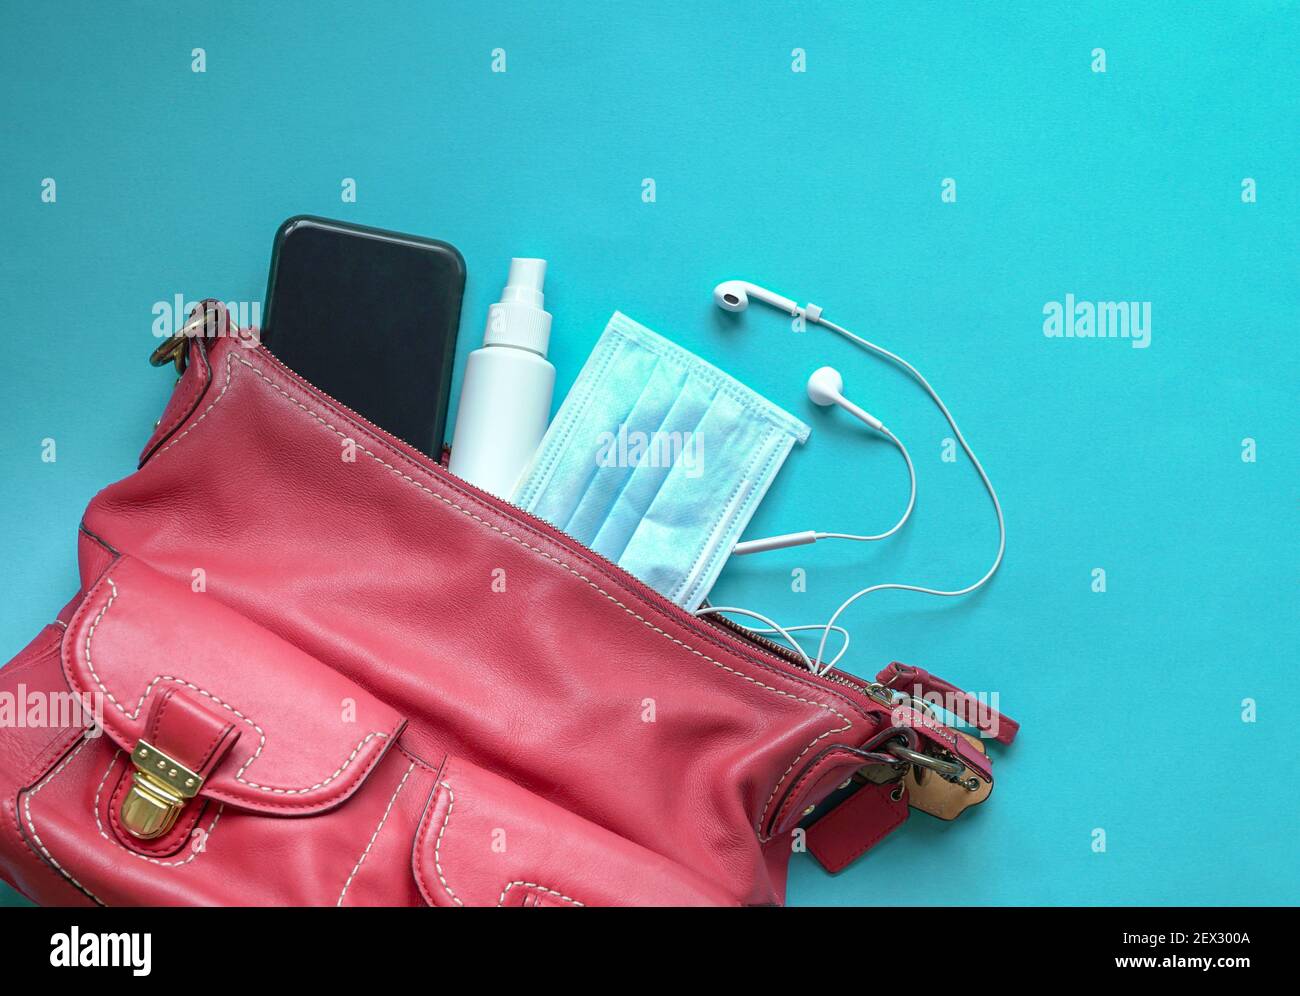 Audispray, ear hygiene product box and spray Stock Photo - Alamy